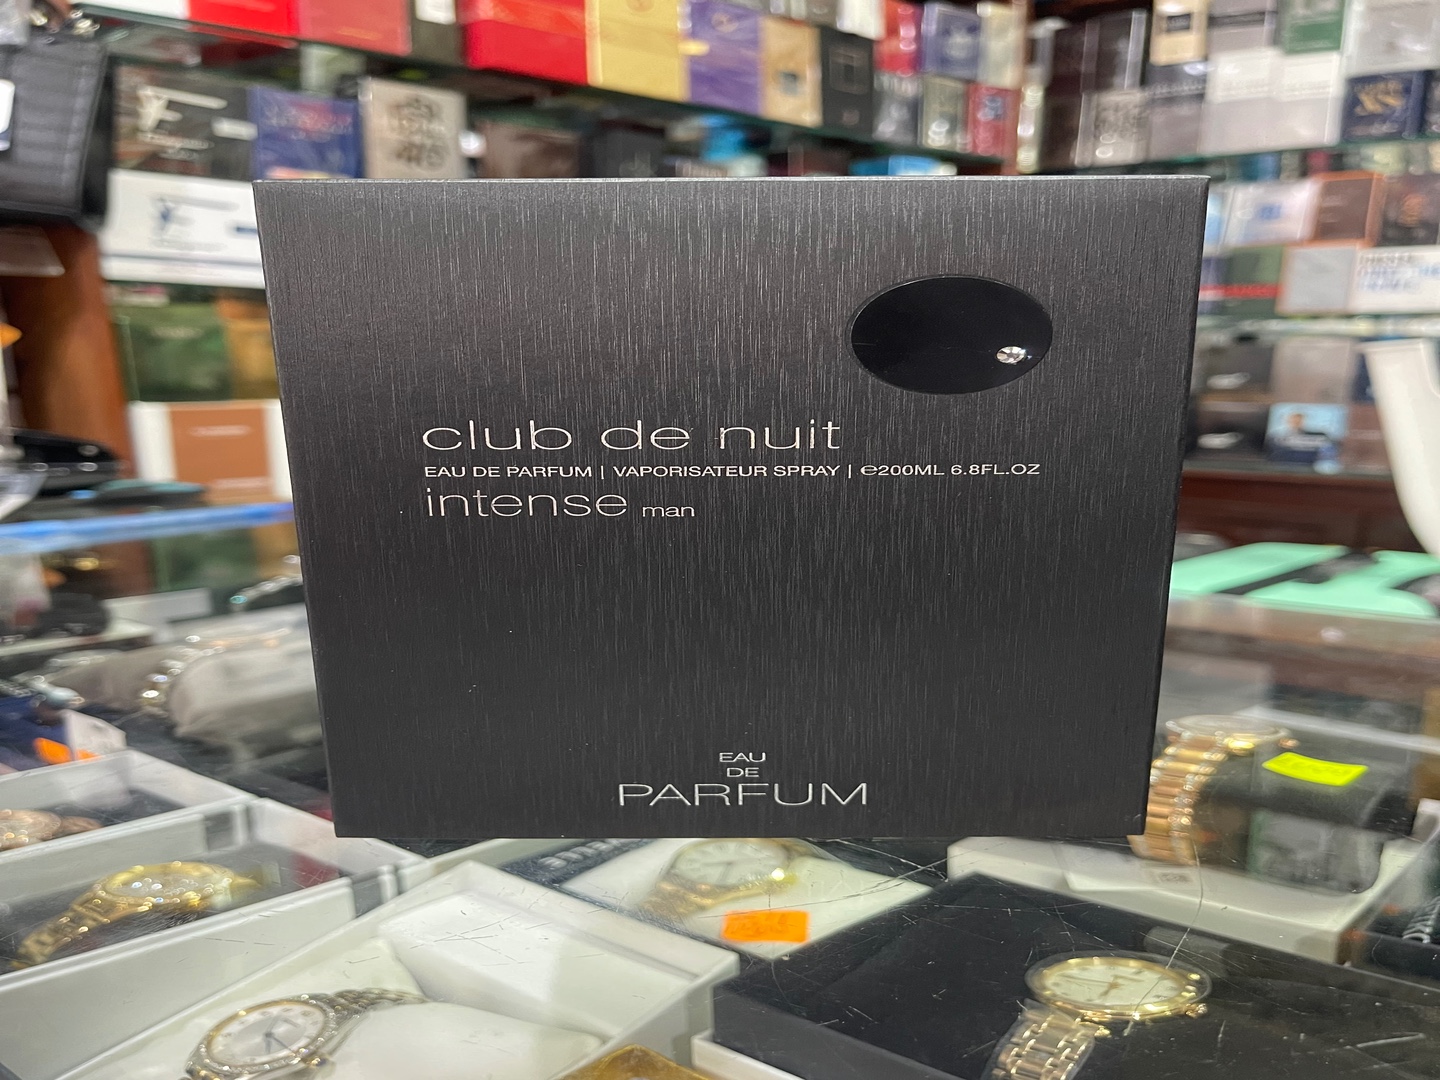 salud y belleza - Perfume Club de Nuit Intense EDP, 200mL - AL POR MAYOR Y AL DETALLE